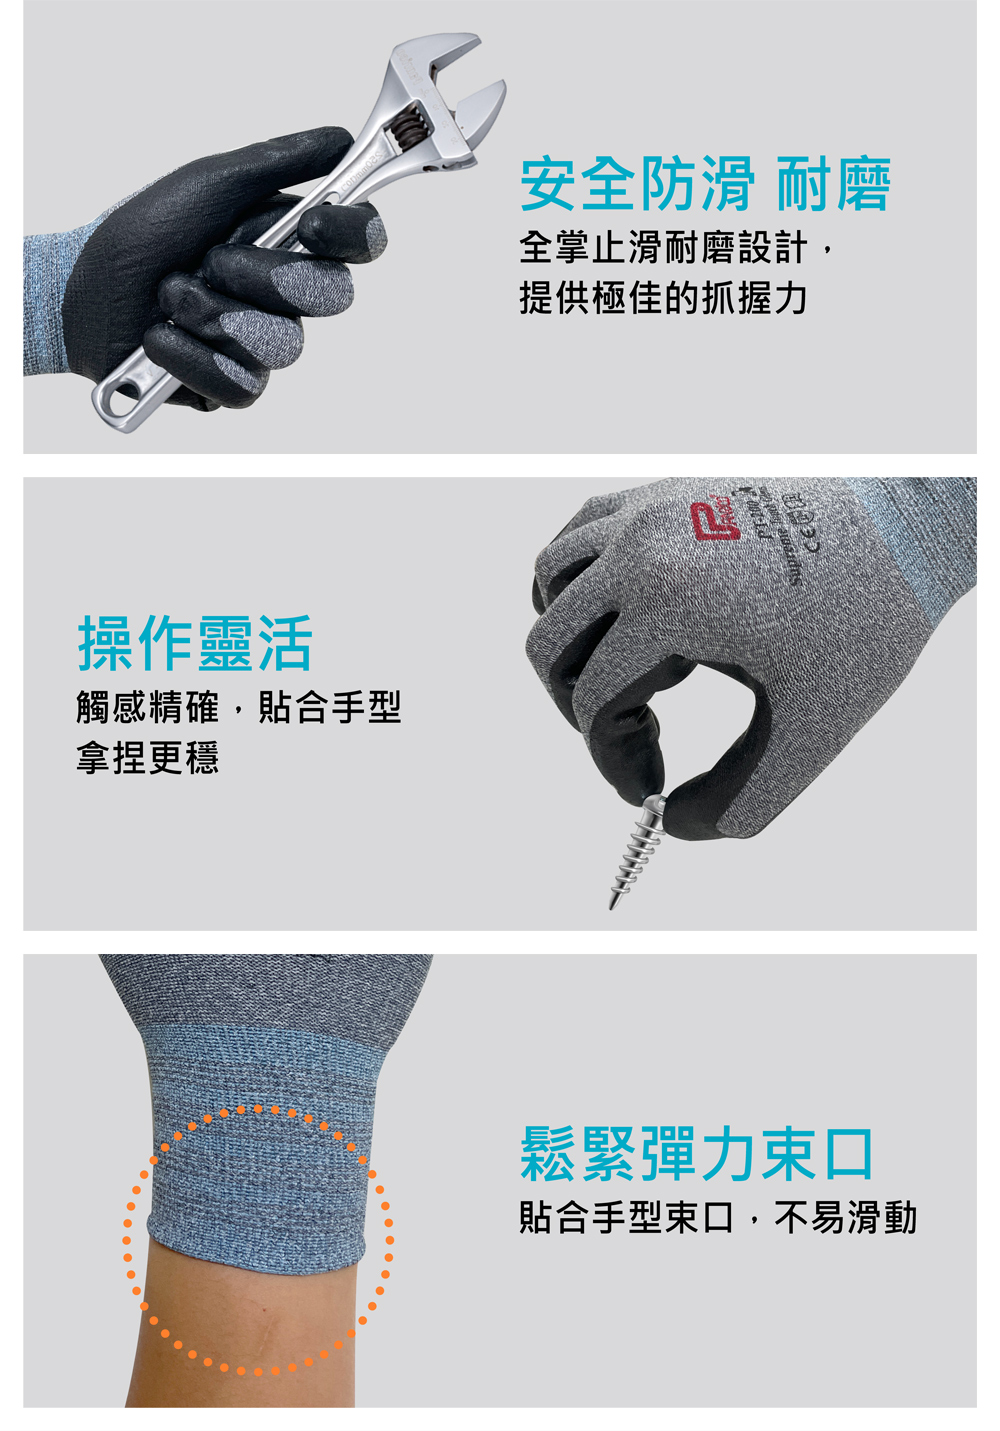 止滑耐磨觸控手套防滑耐磨 操控靈活 舒適服貼 第II代